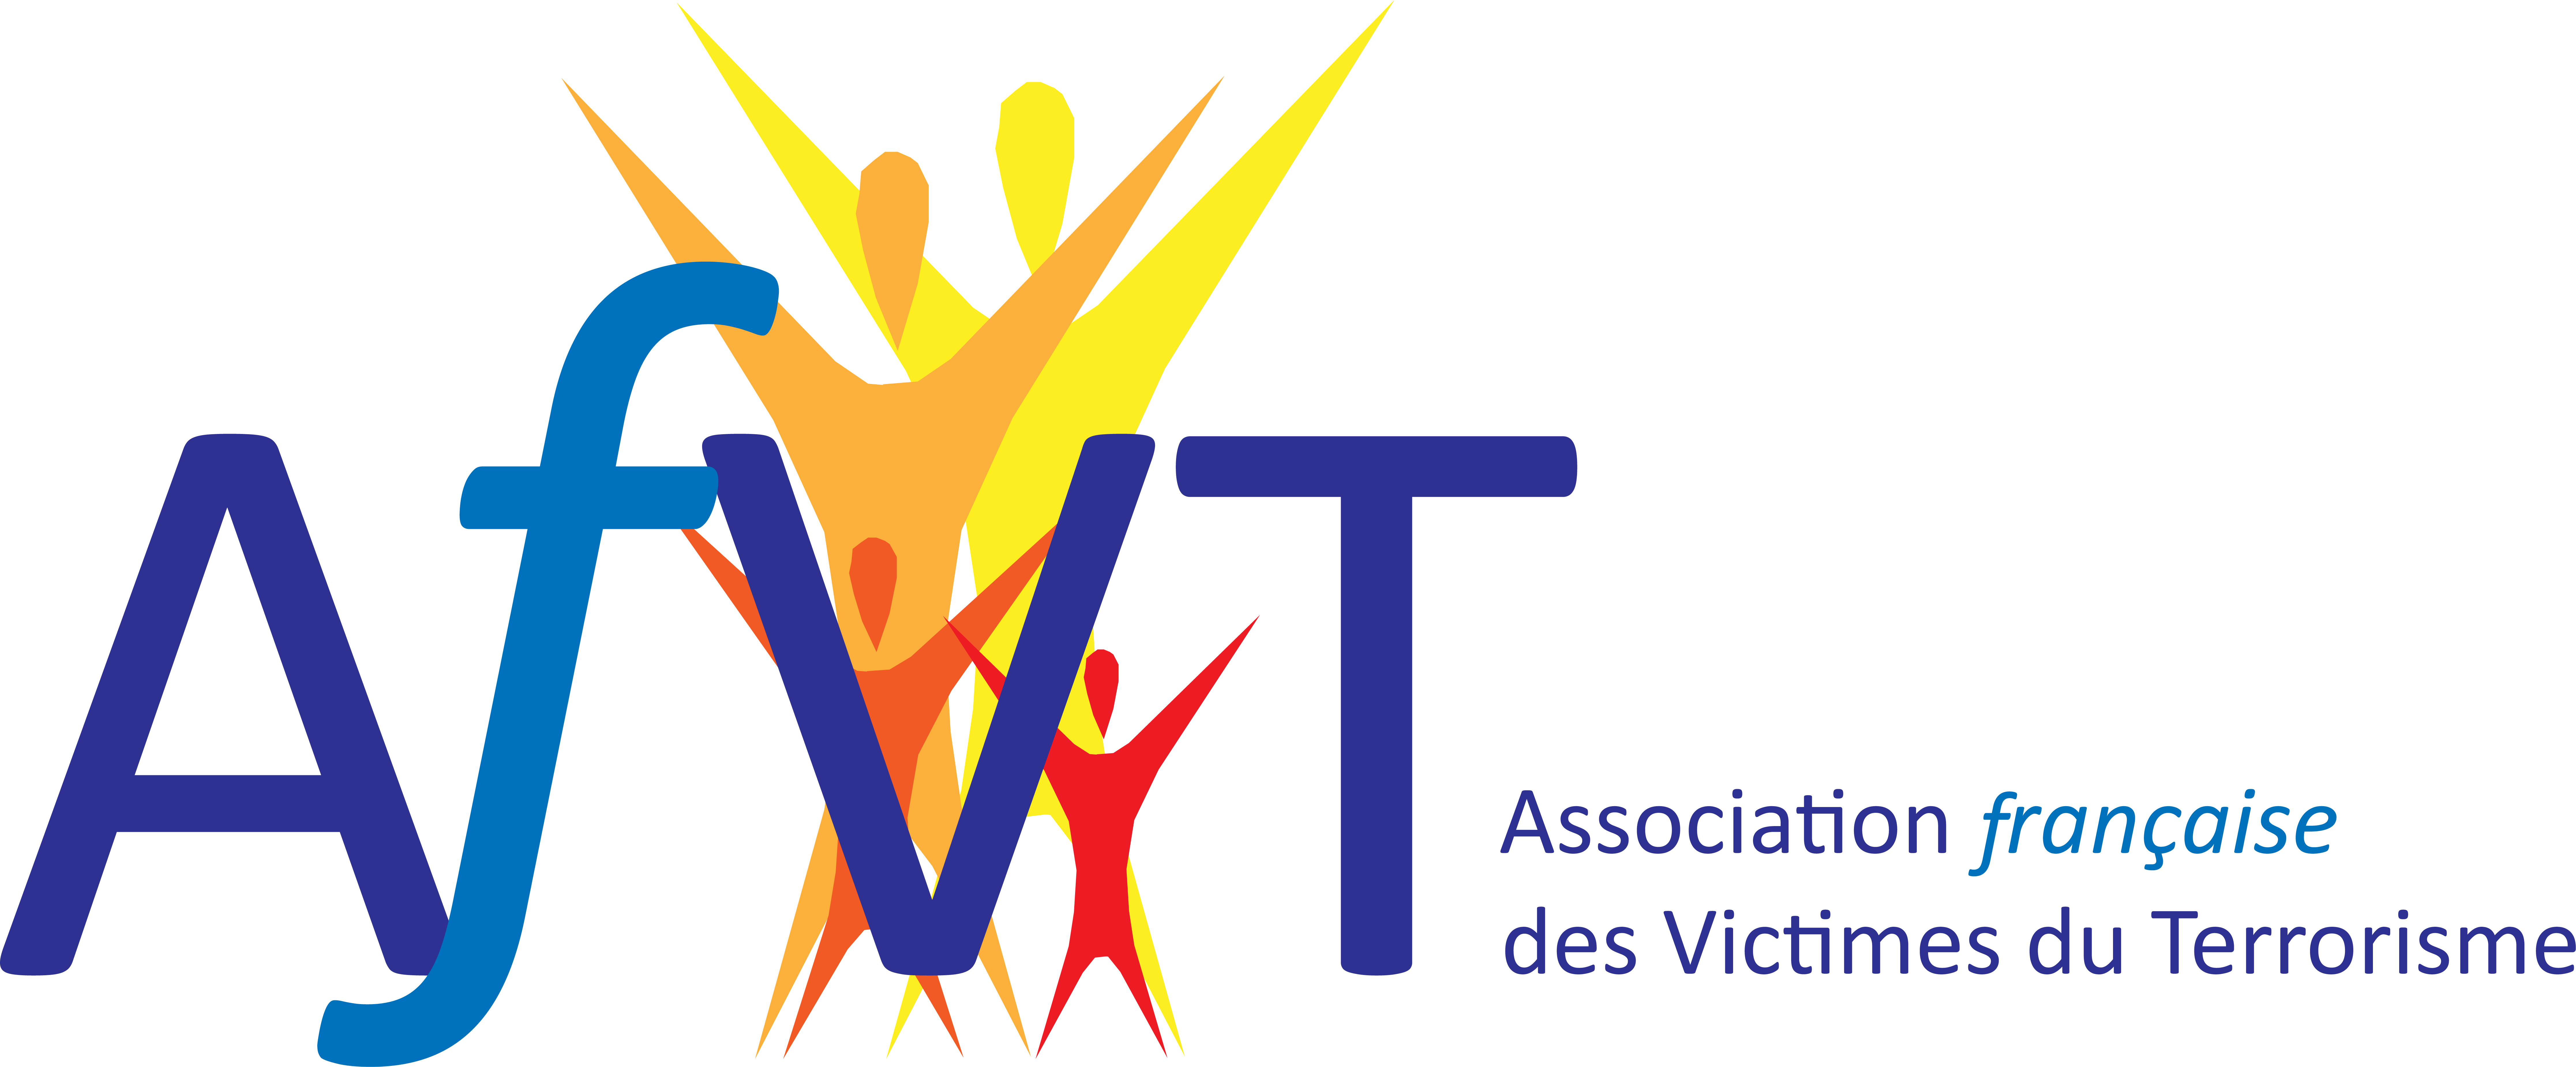 AfVT - Association française des Victimes du Terrorisme